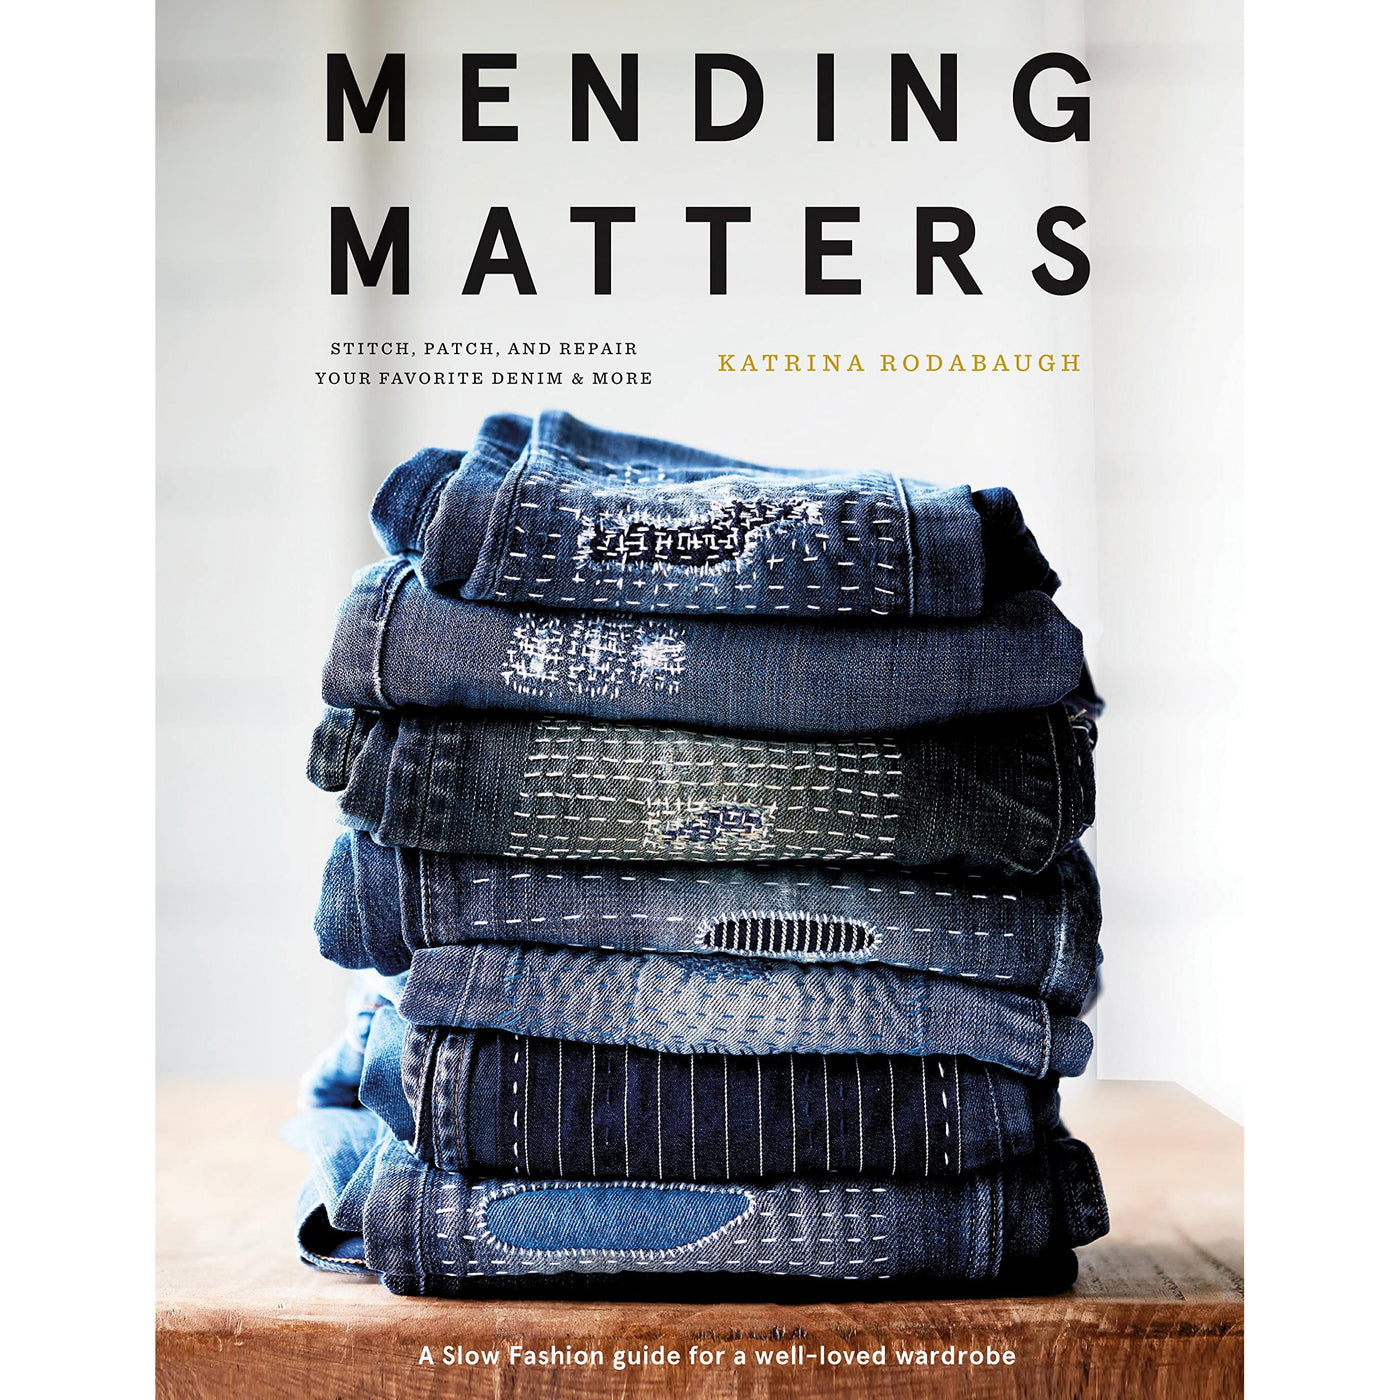 Mending Matters (Katrina Rodabaugh)